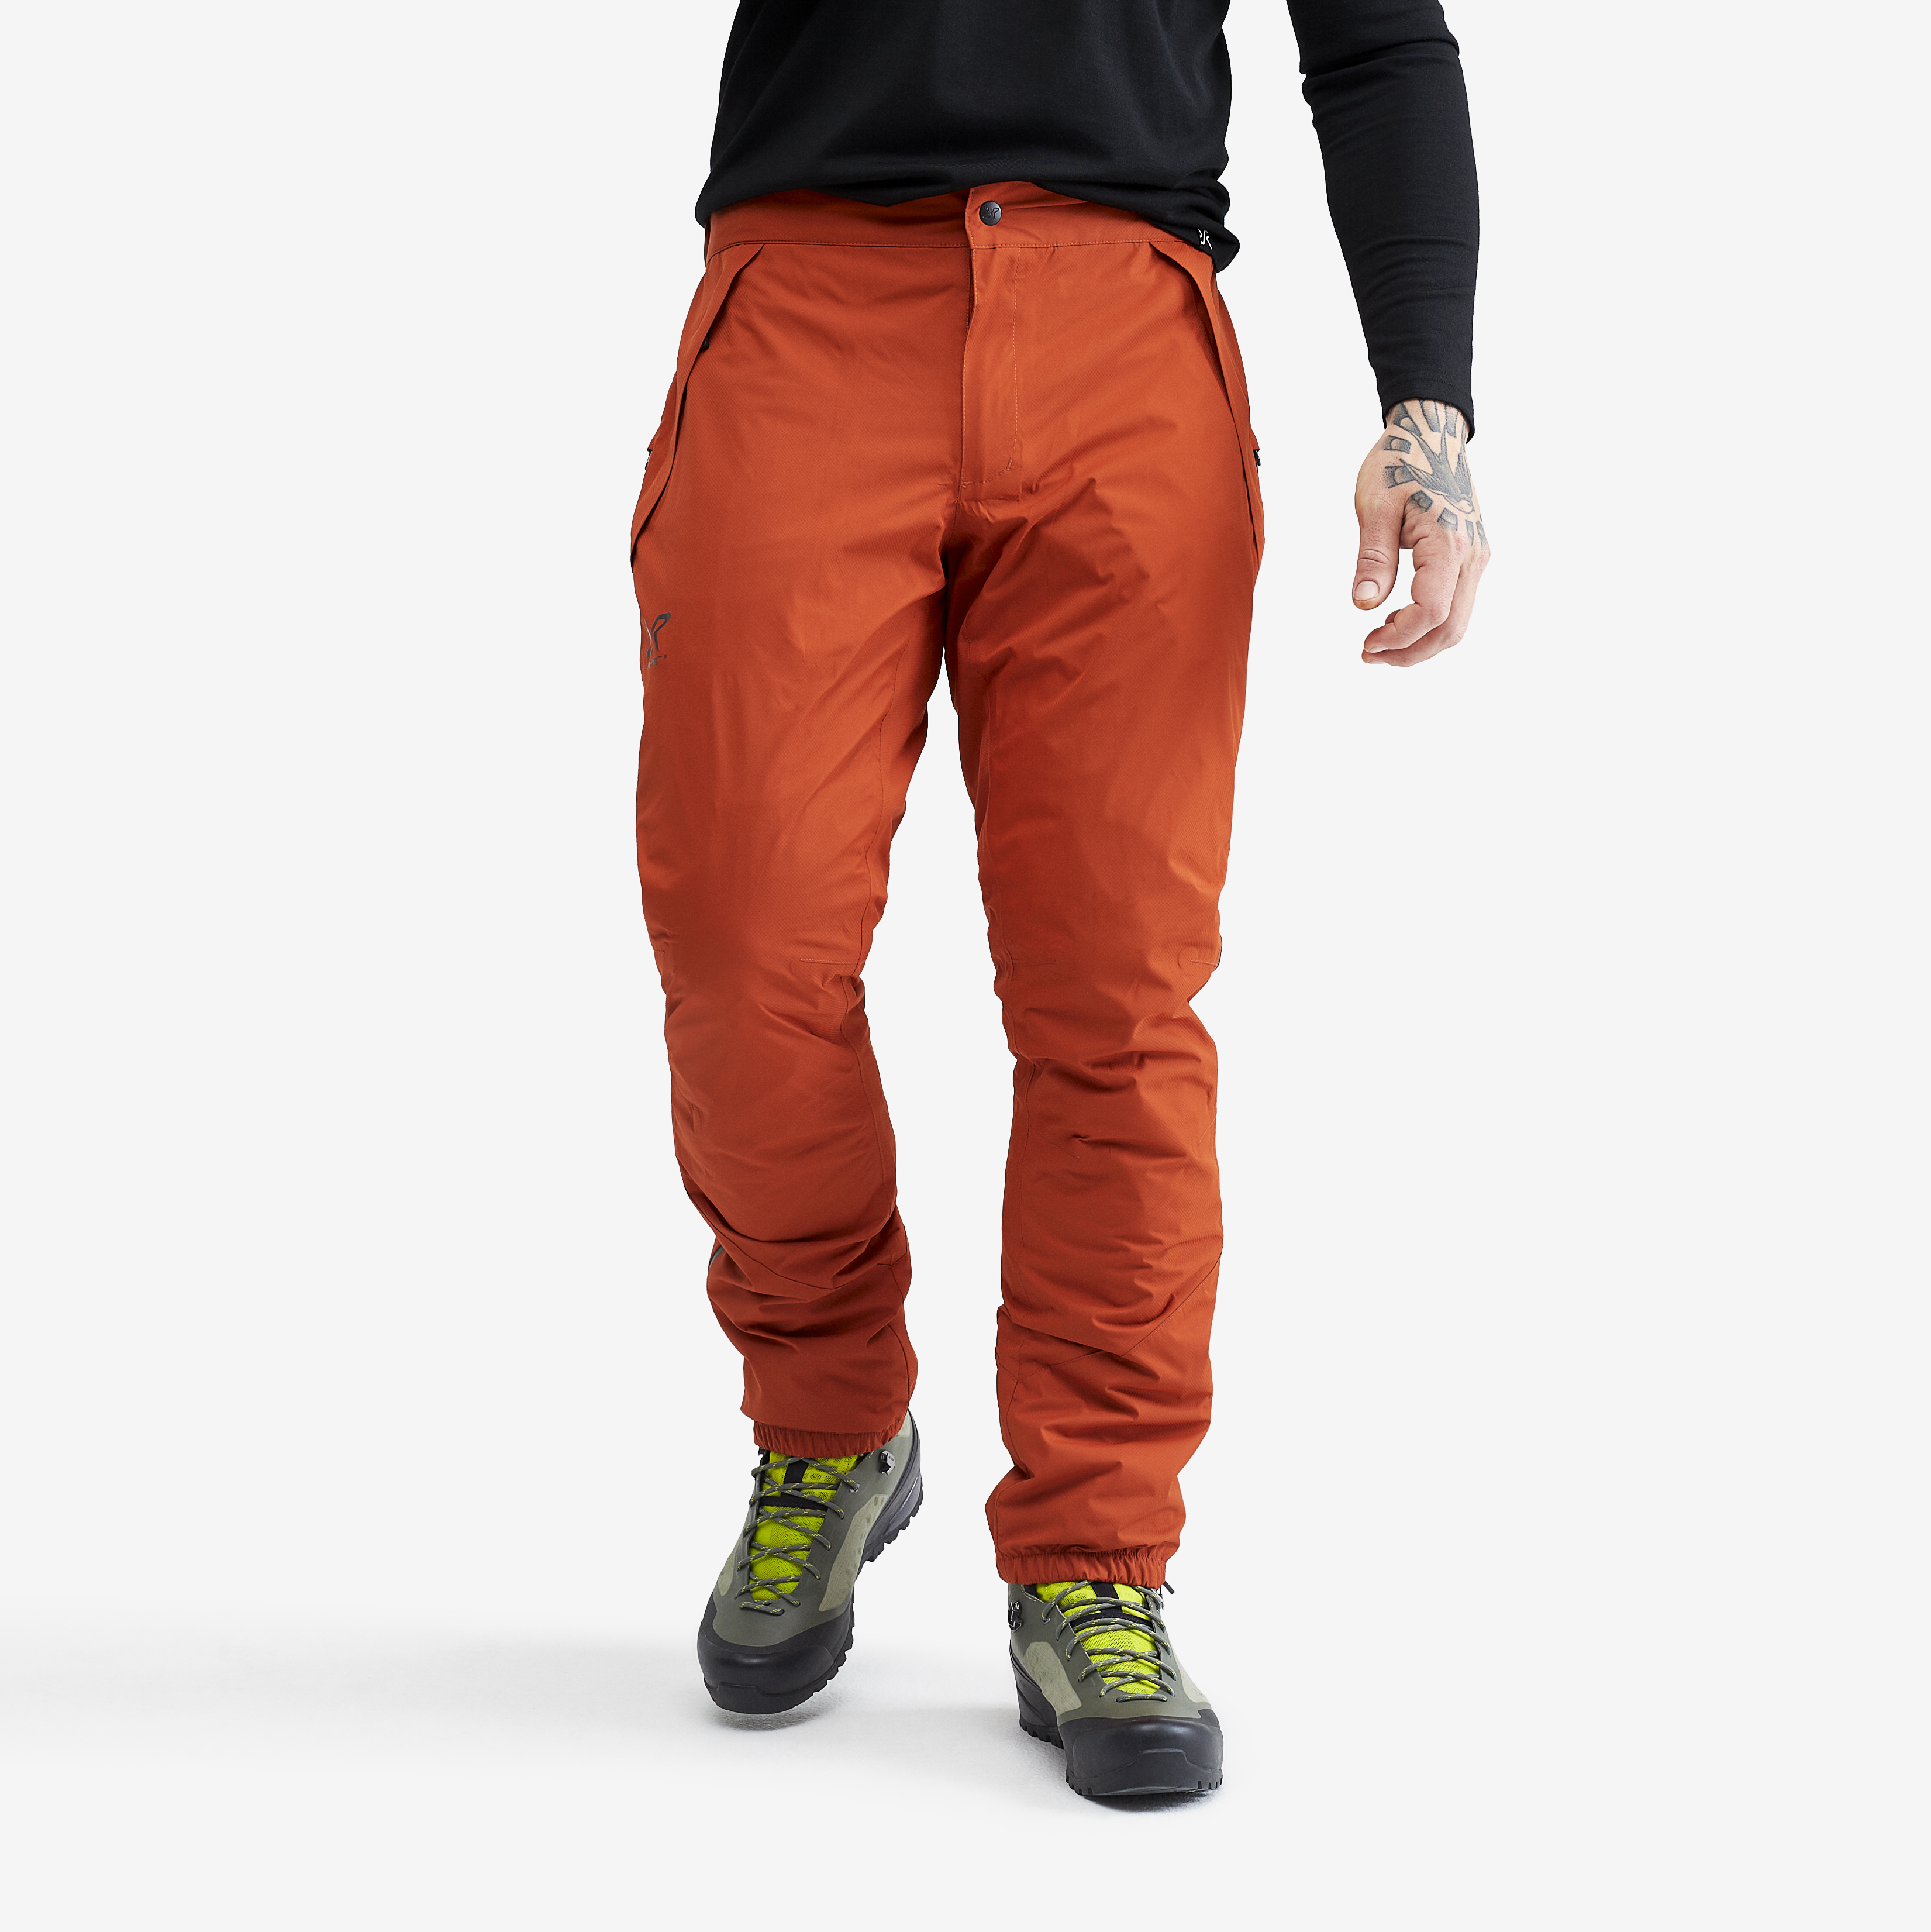 Pantalon impermeable Typhoon para hombre en naranja